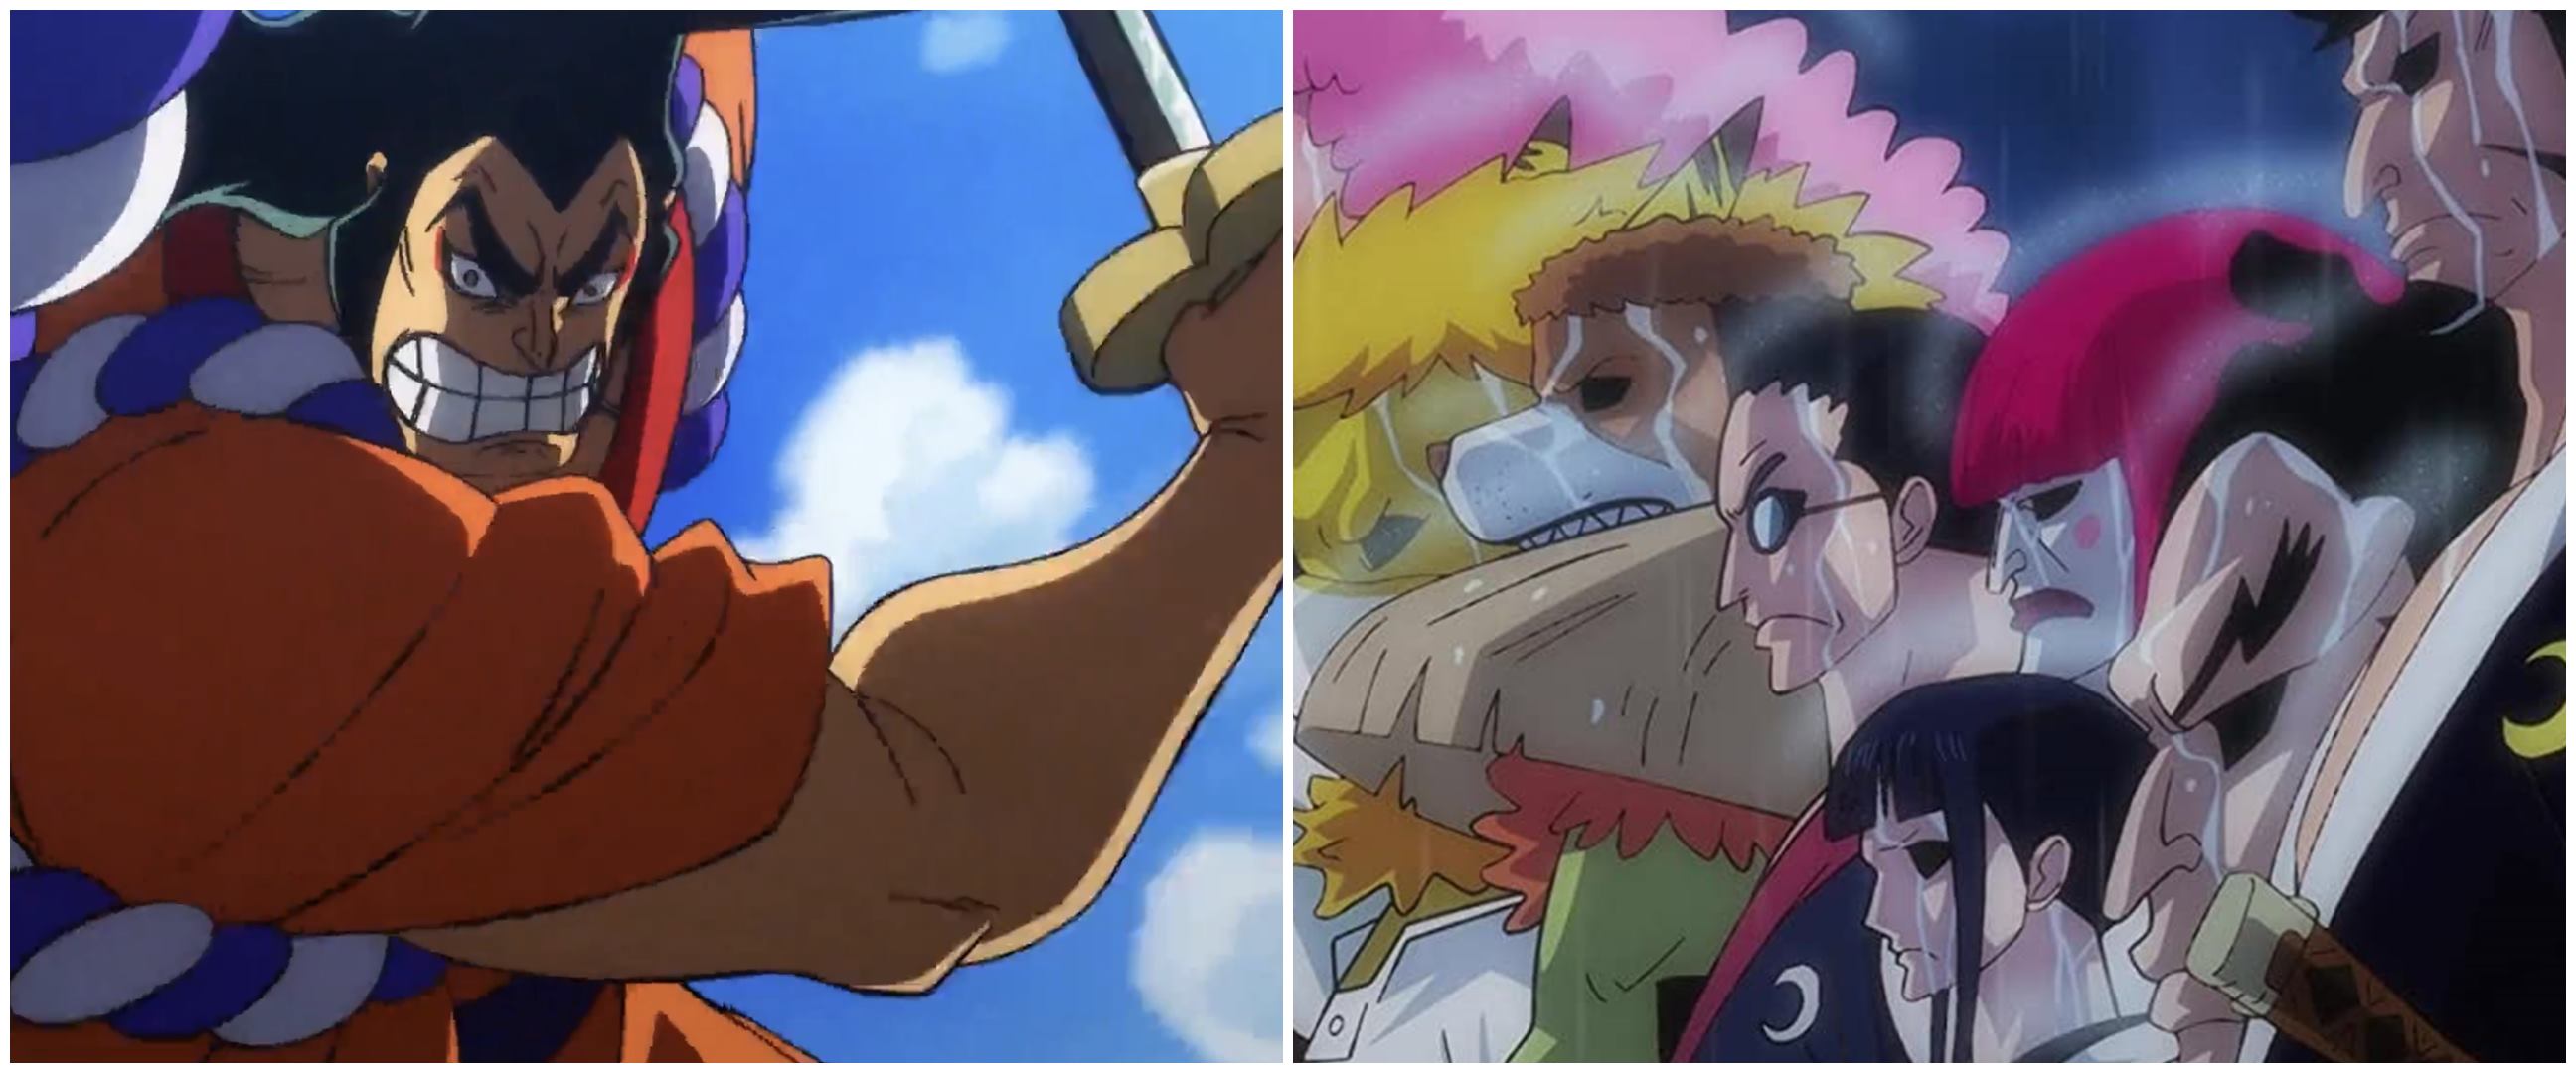 9 Kisah Akazaya Nine One Piece, geng samurai lawan terkuat Kaido